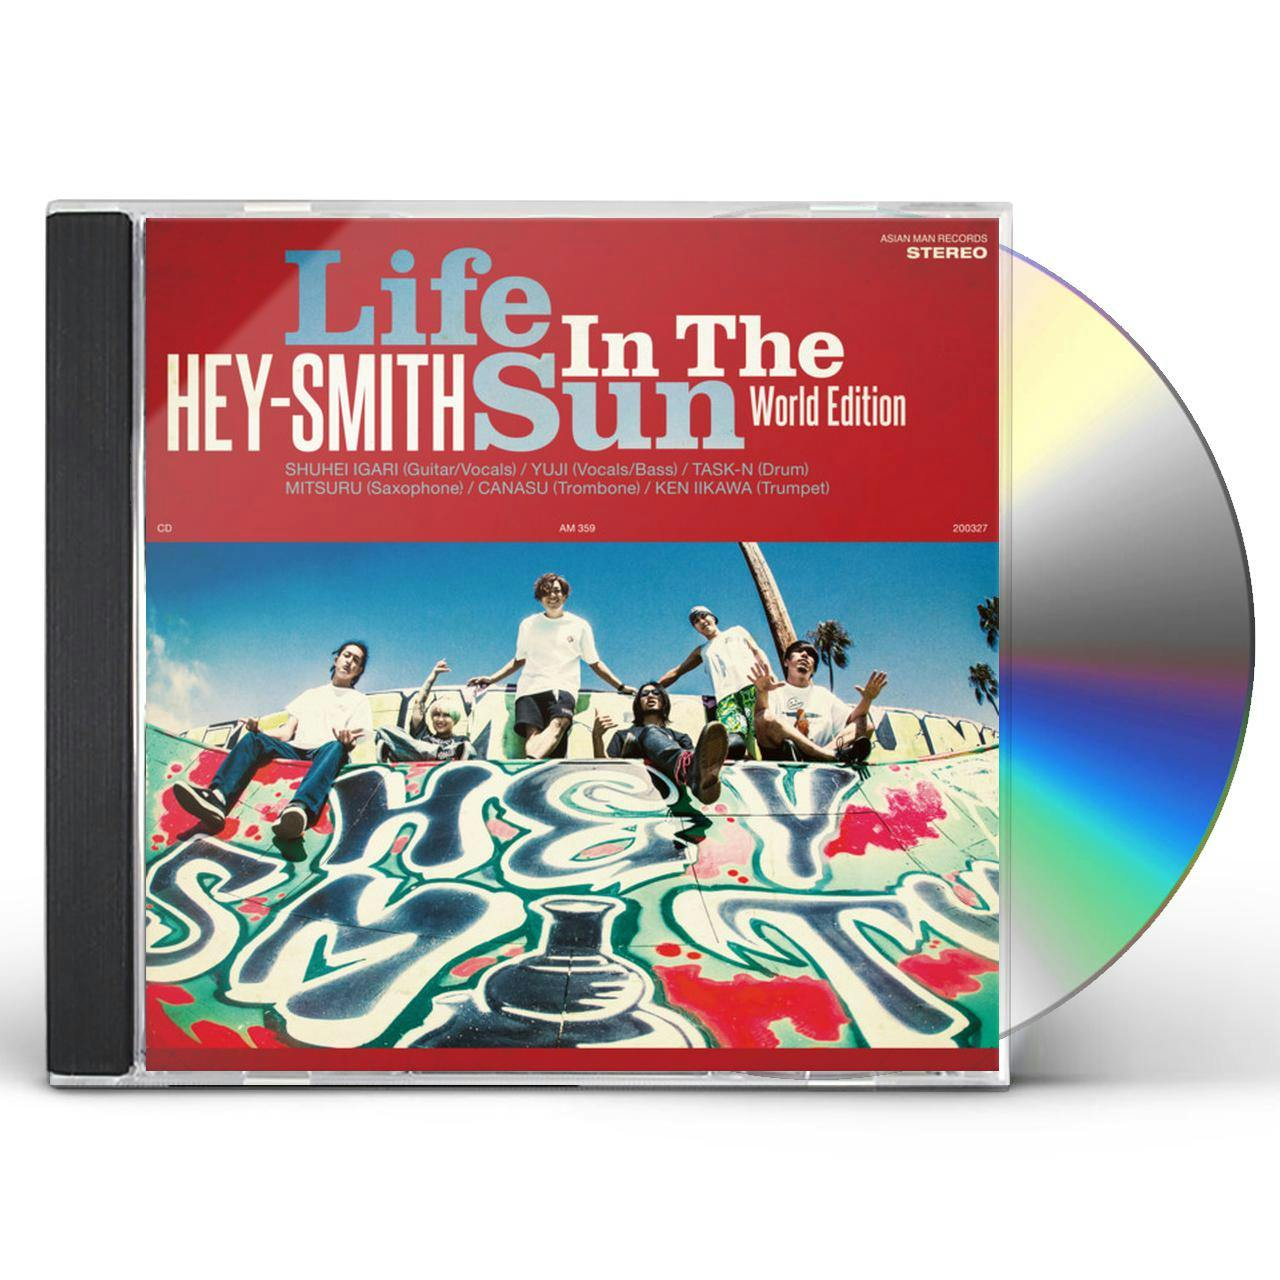 HEY-SMITH life in the sun レコード